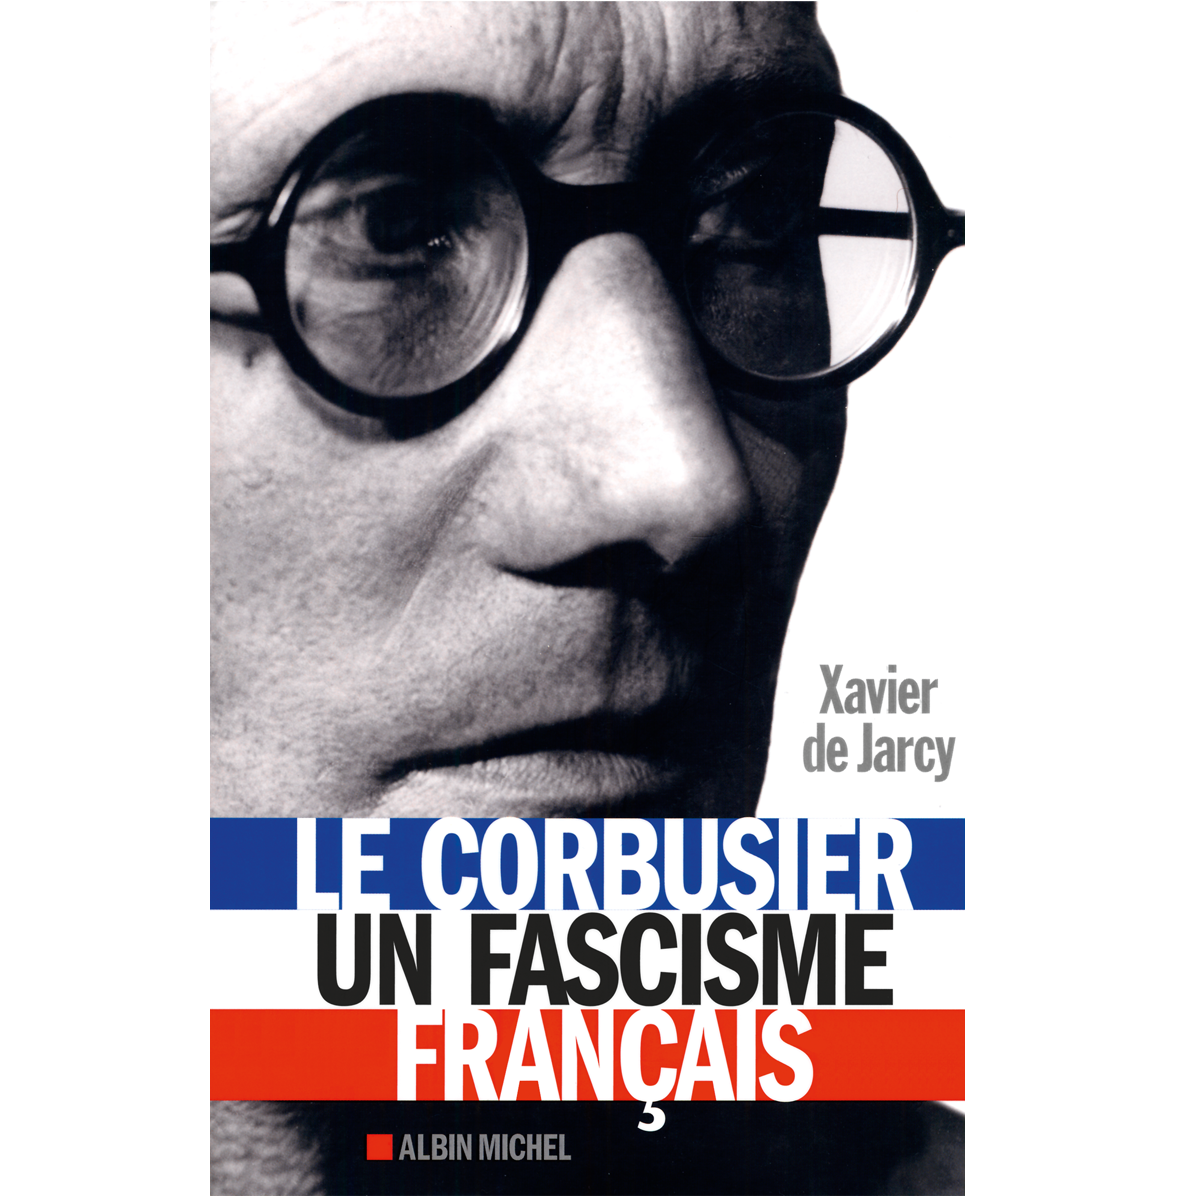 Le Corbusier, une fascisme français